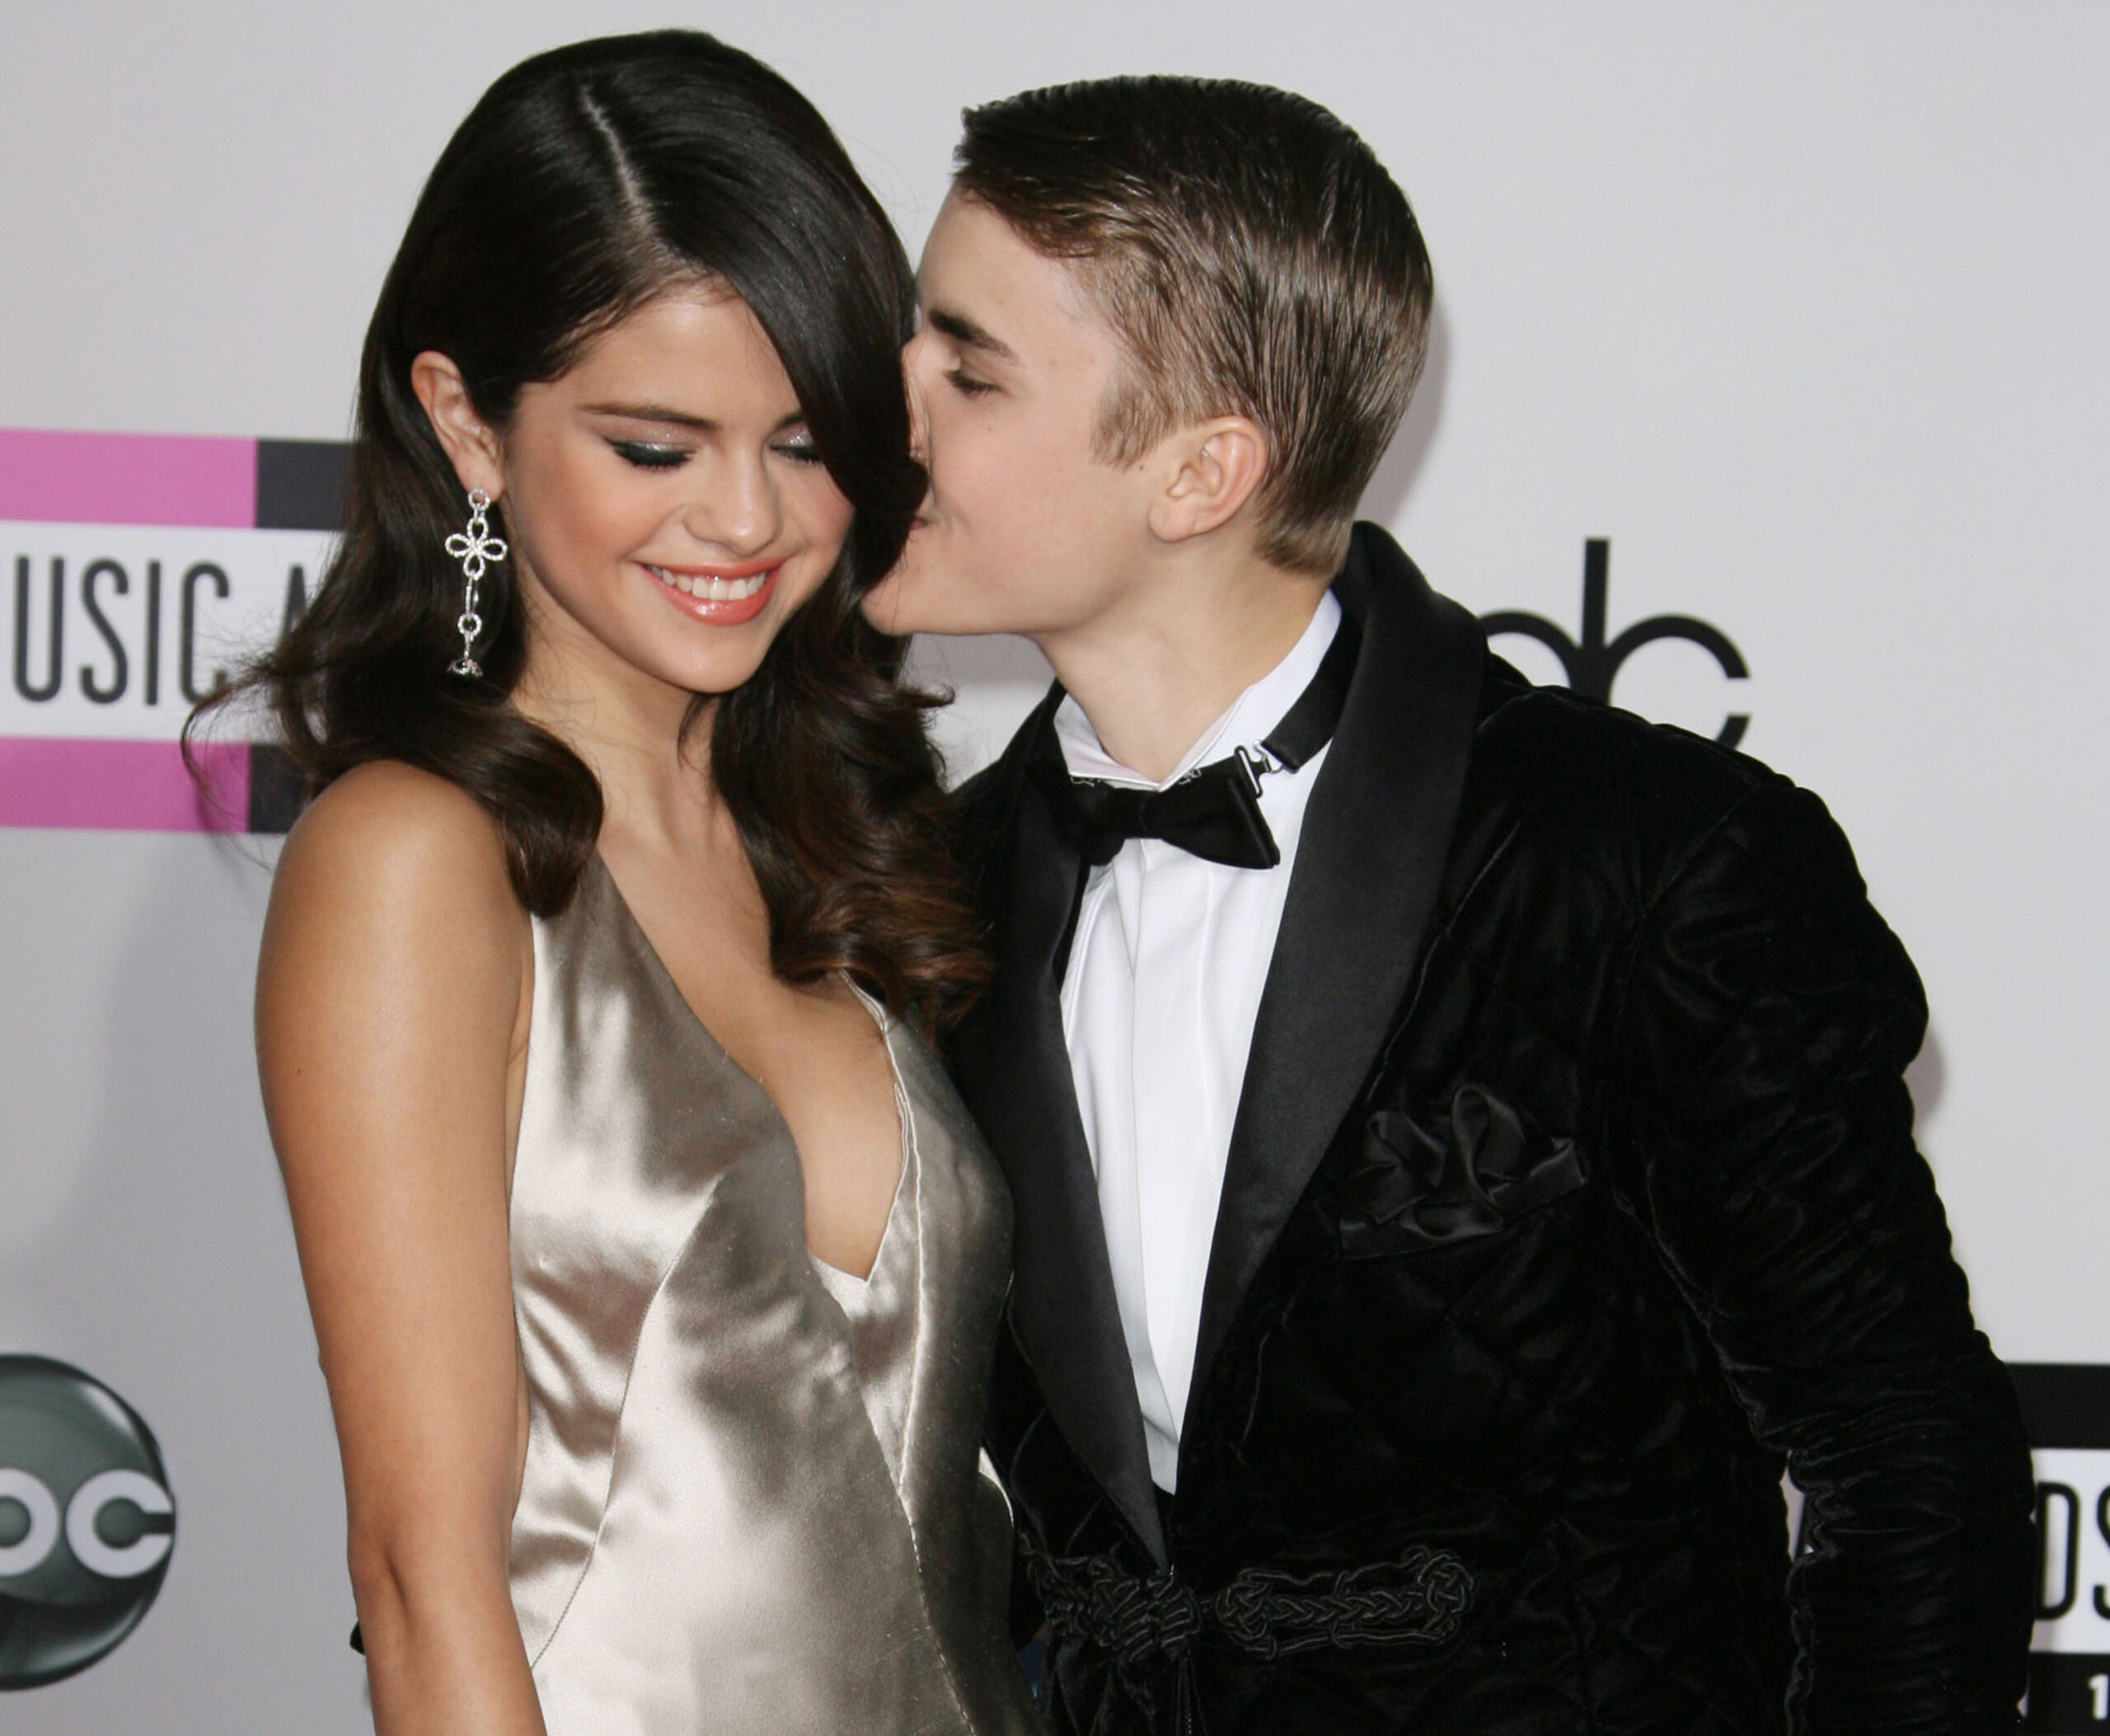 Selena l-a dat peste cap pe Bieber cu melodia ”Back To You”. Urmează o împăcare?